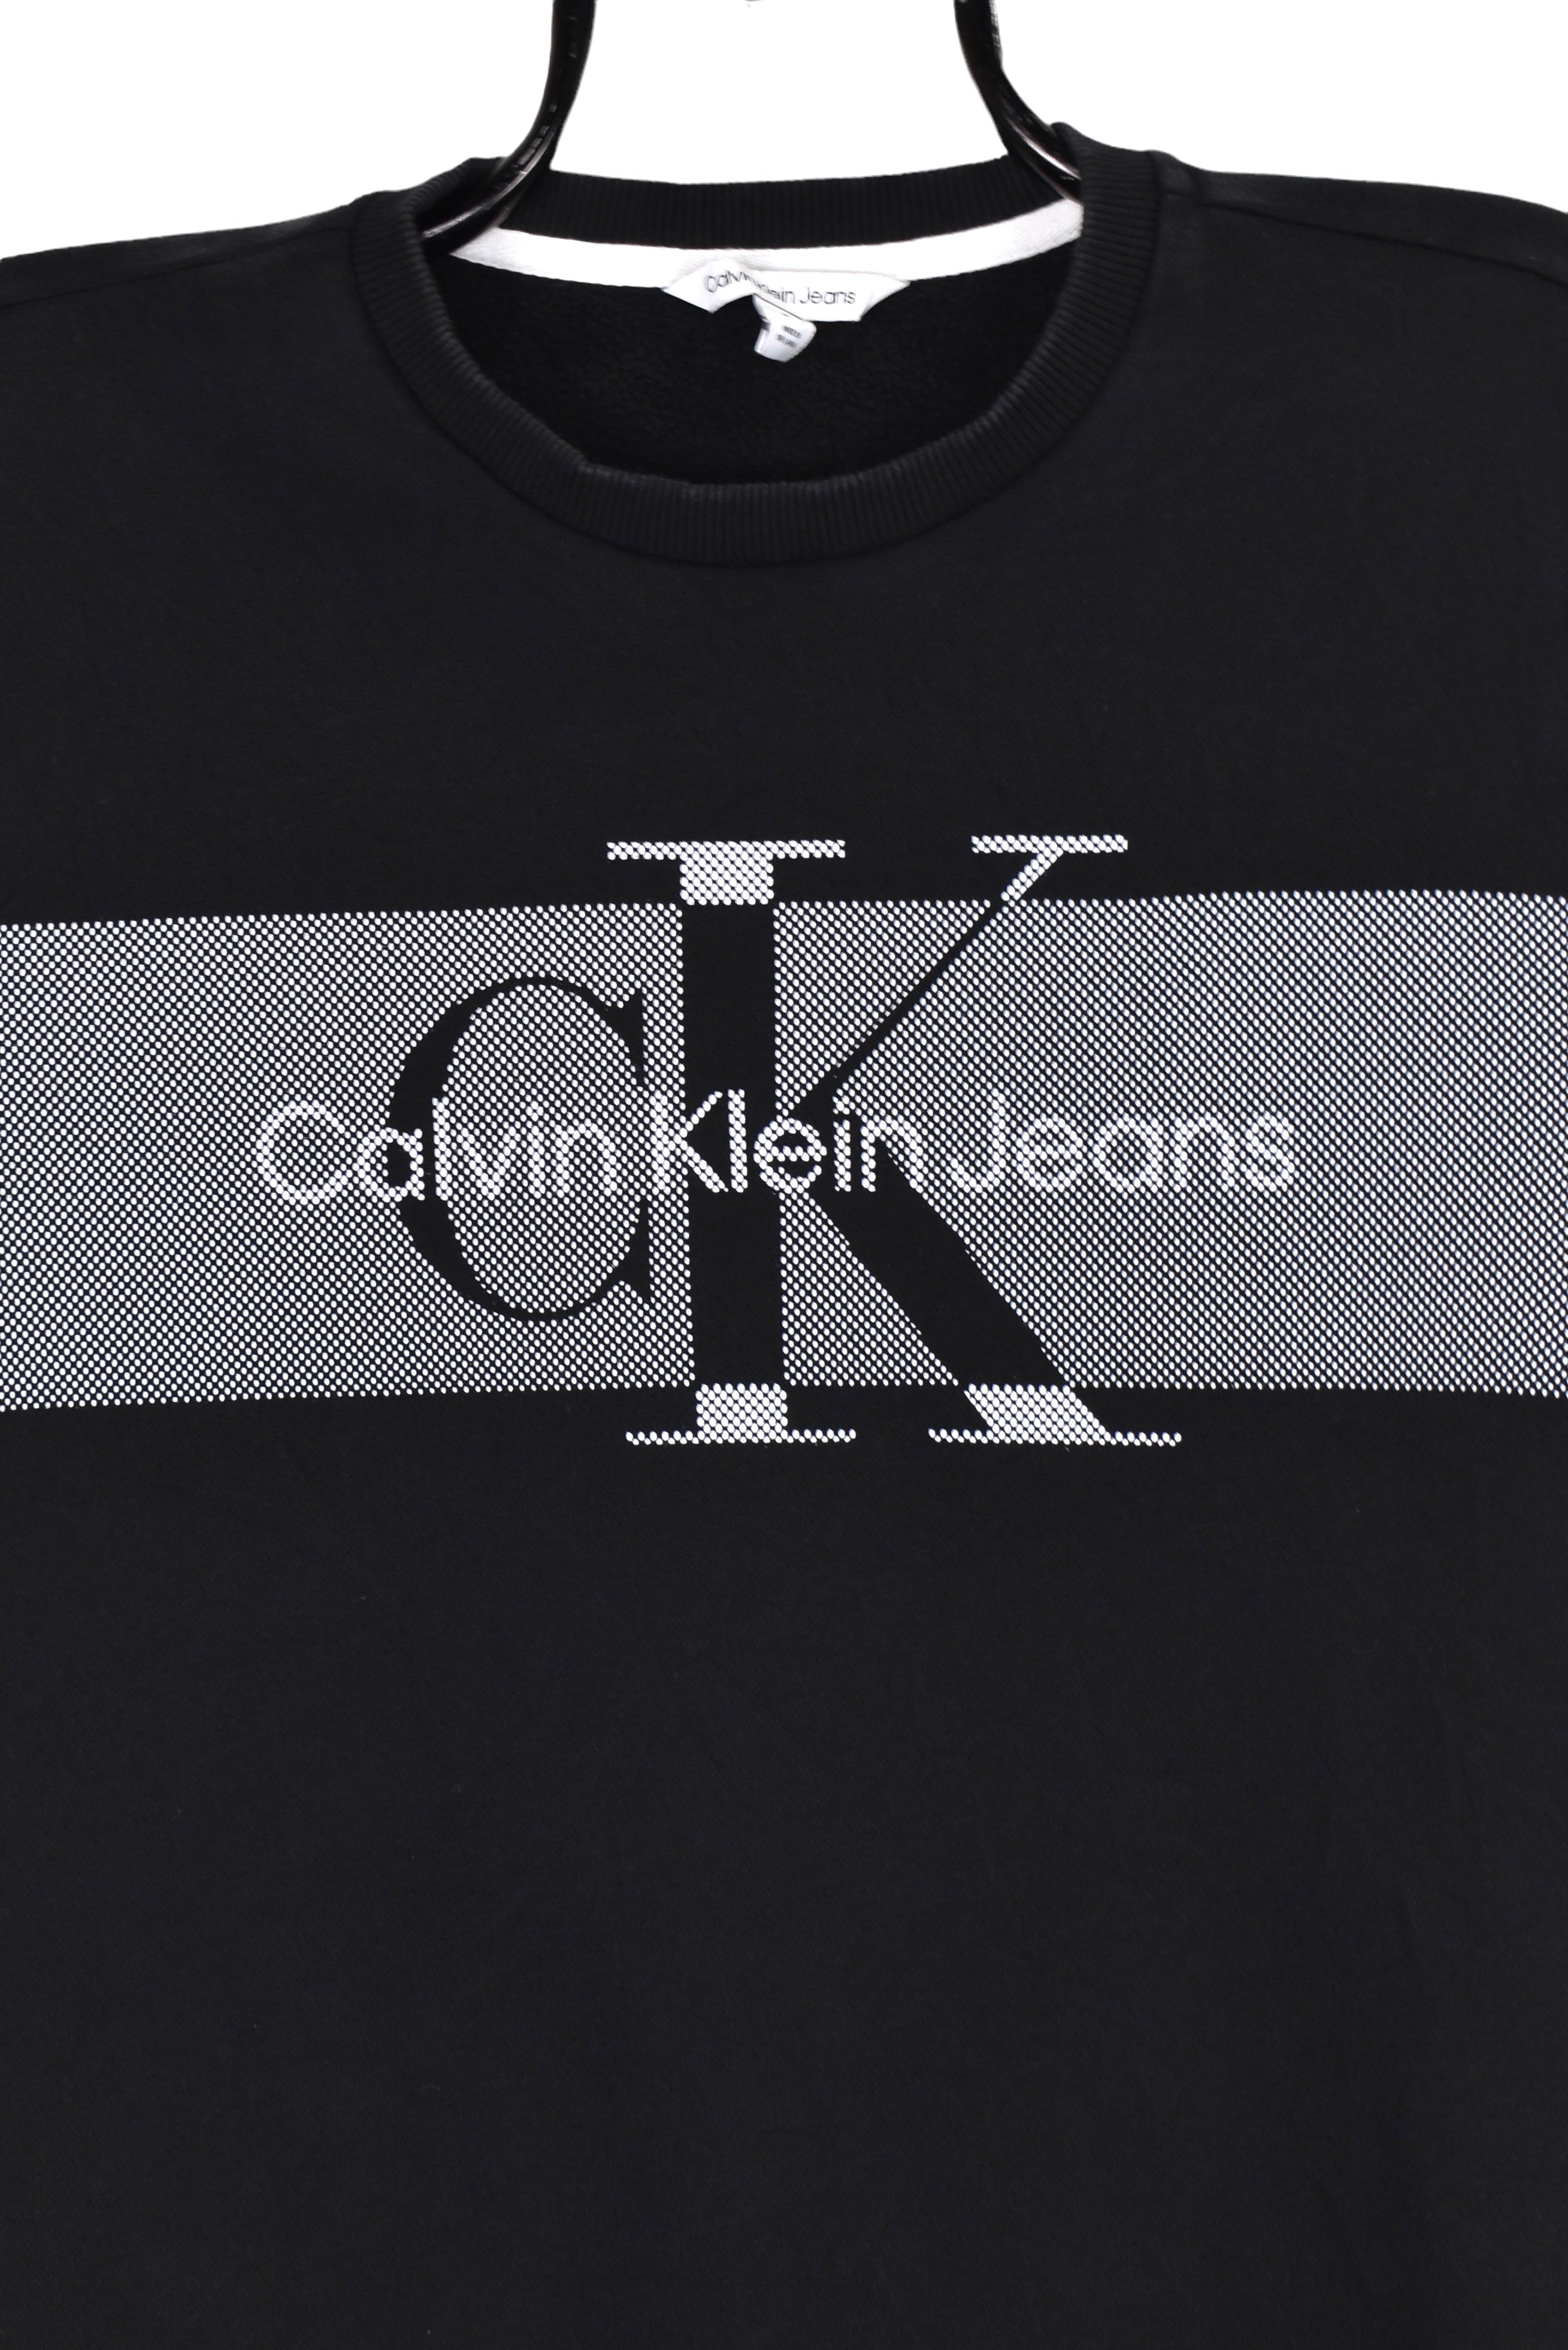 Modern Calvin Klein sweatshirt (M), black graphic crewneck